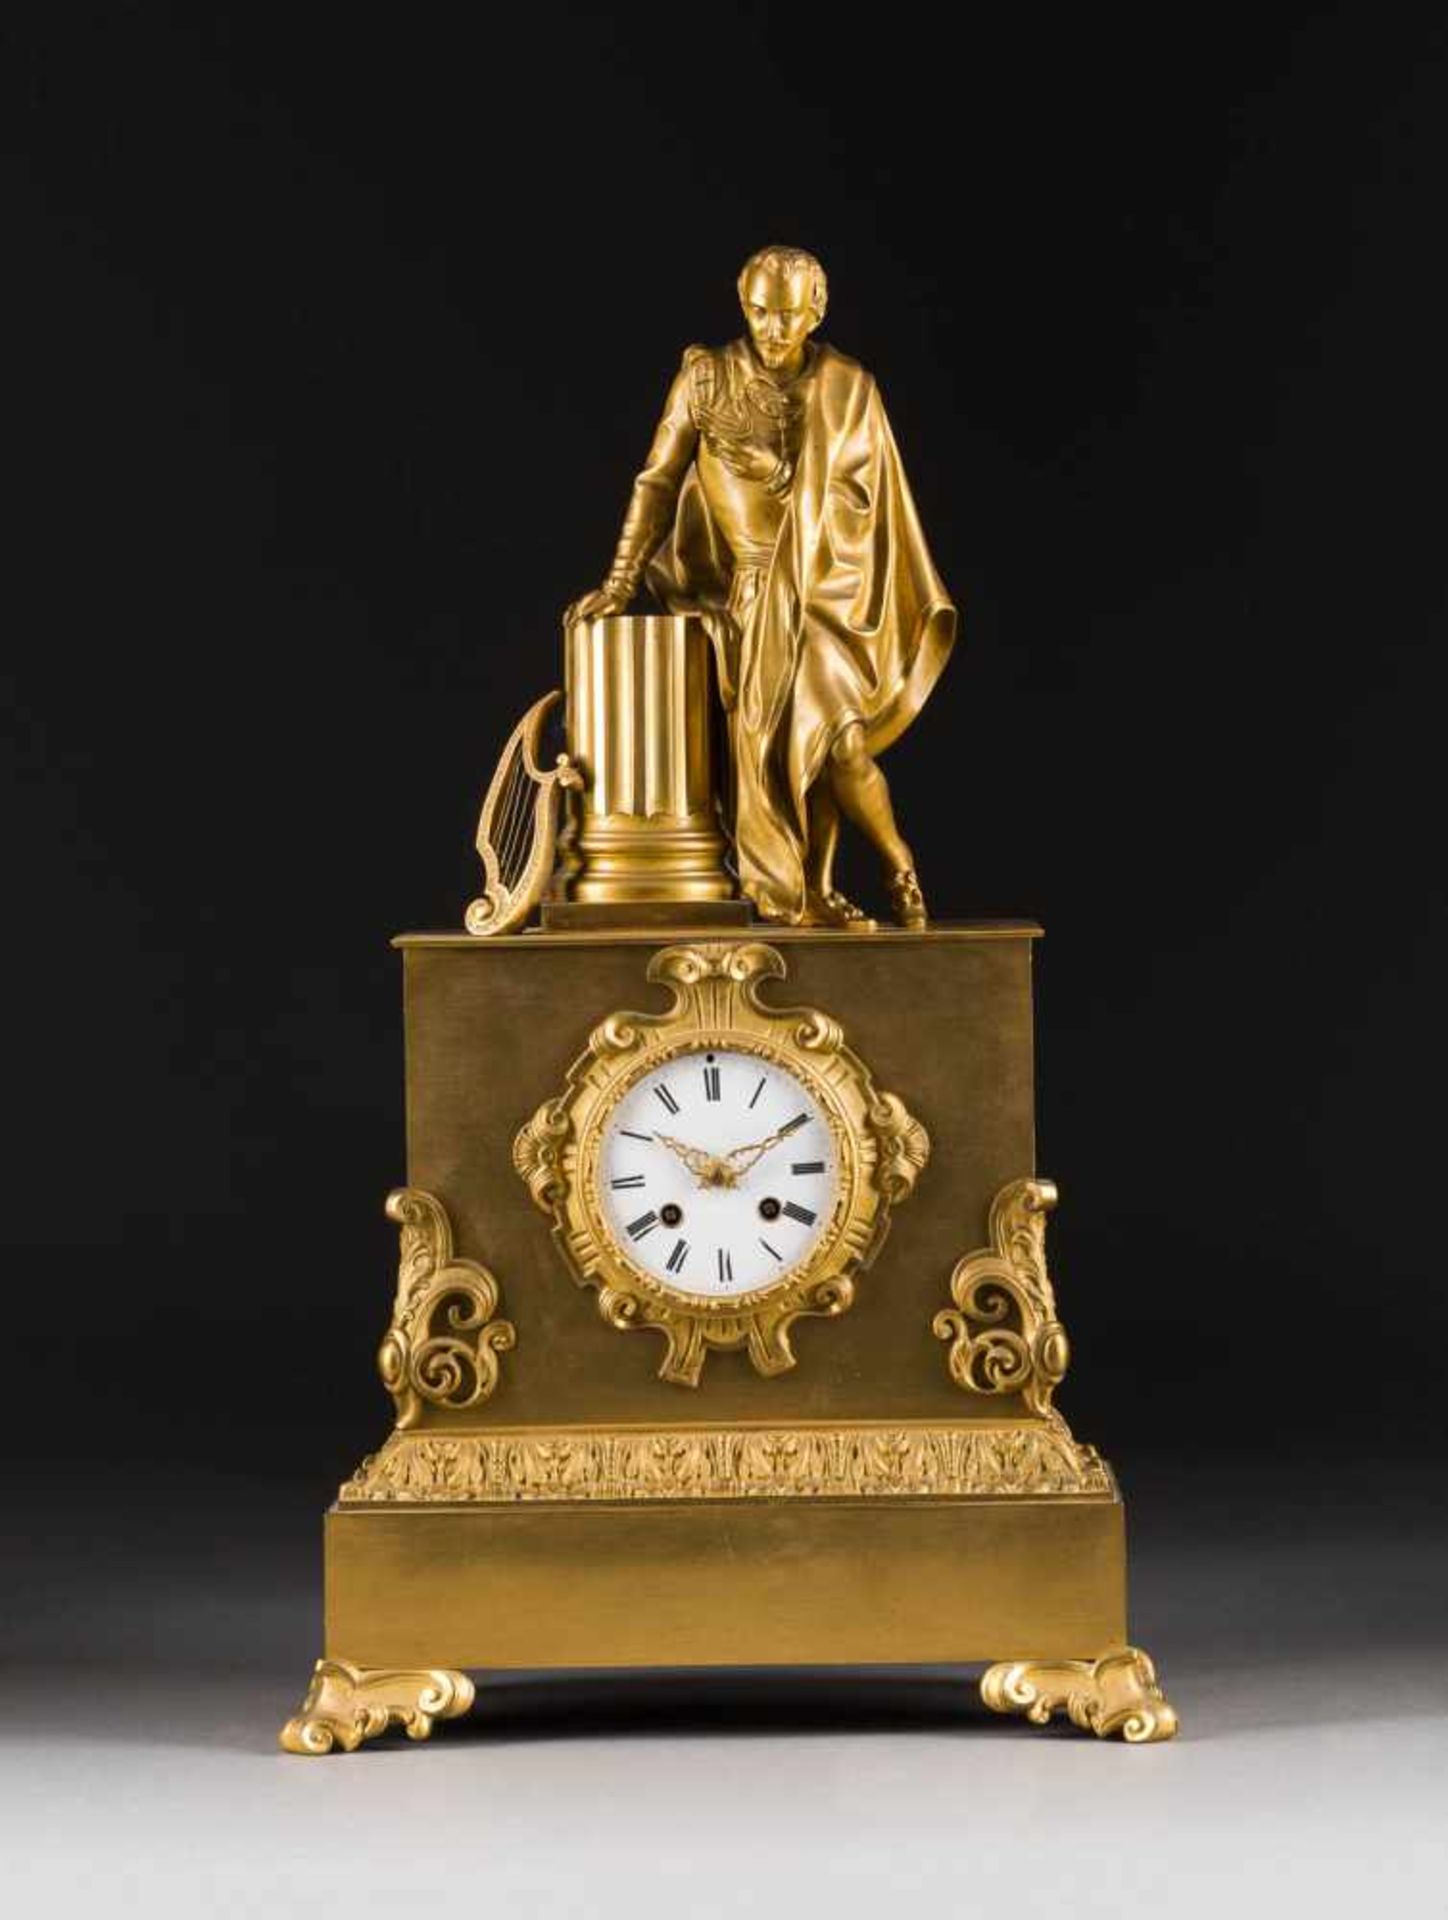 KAMINPENDULE 'MUSIKANT' Frankreich, Mitte 19. Jh. Bronze, vergoldet. H. 55 cm. Auf dem Uhrwerk mit